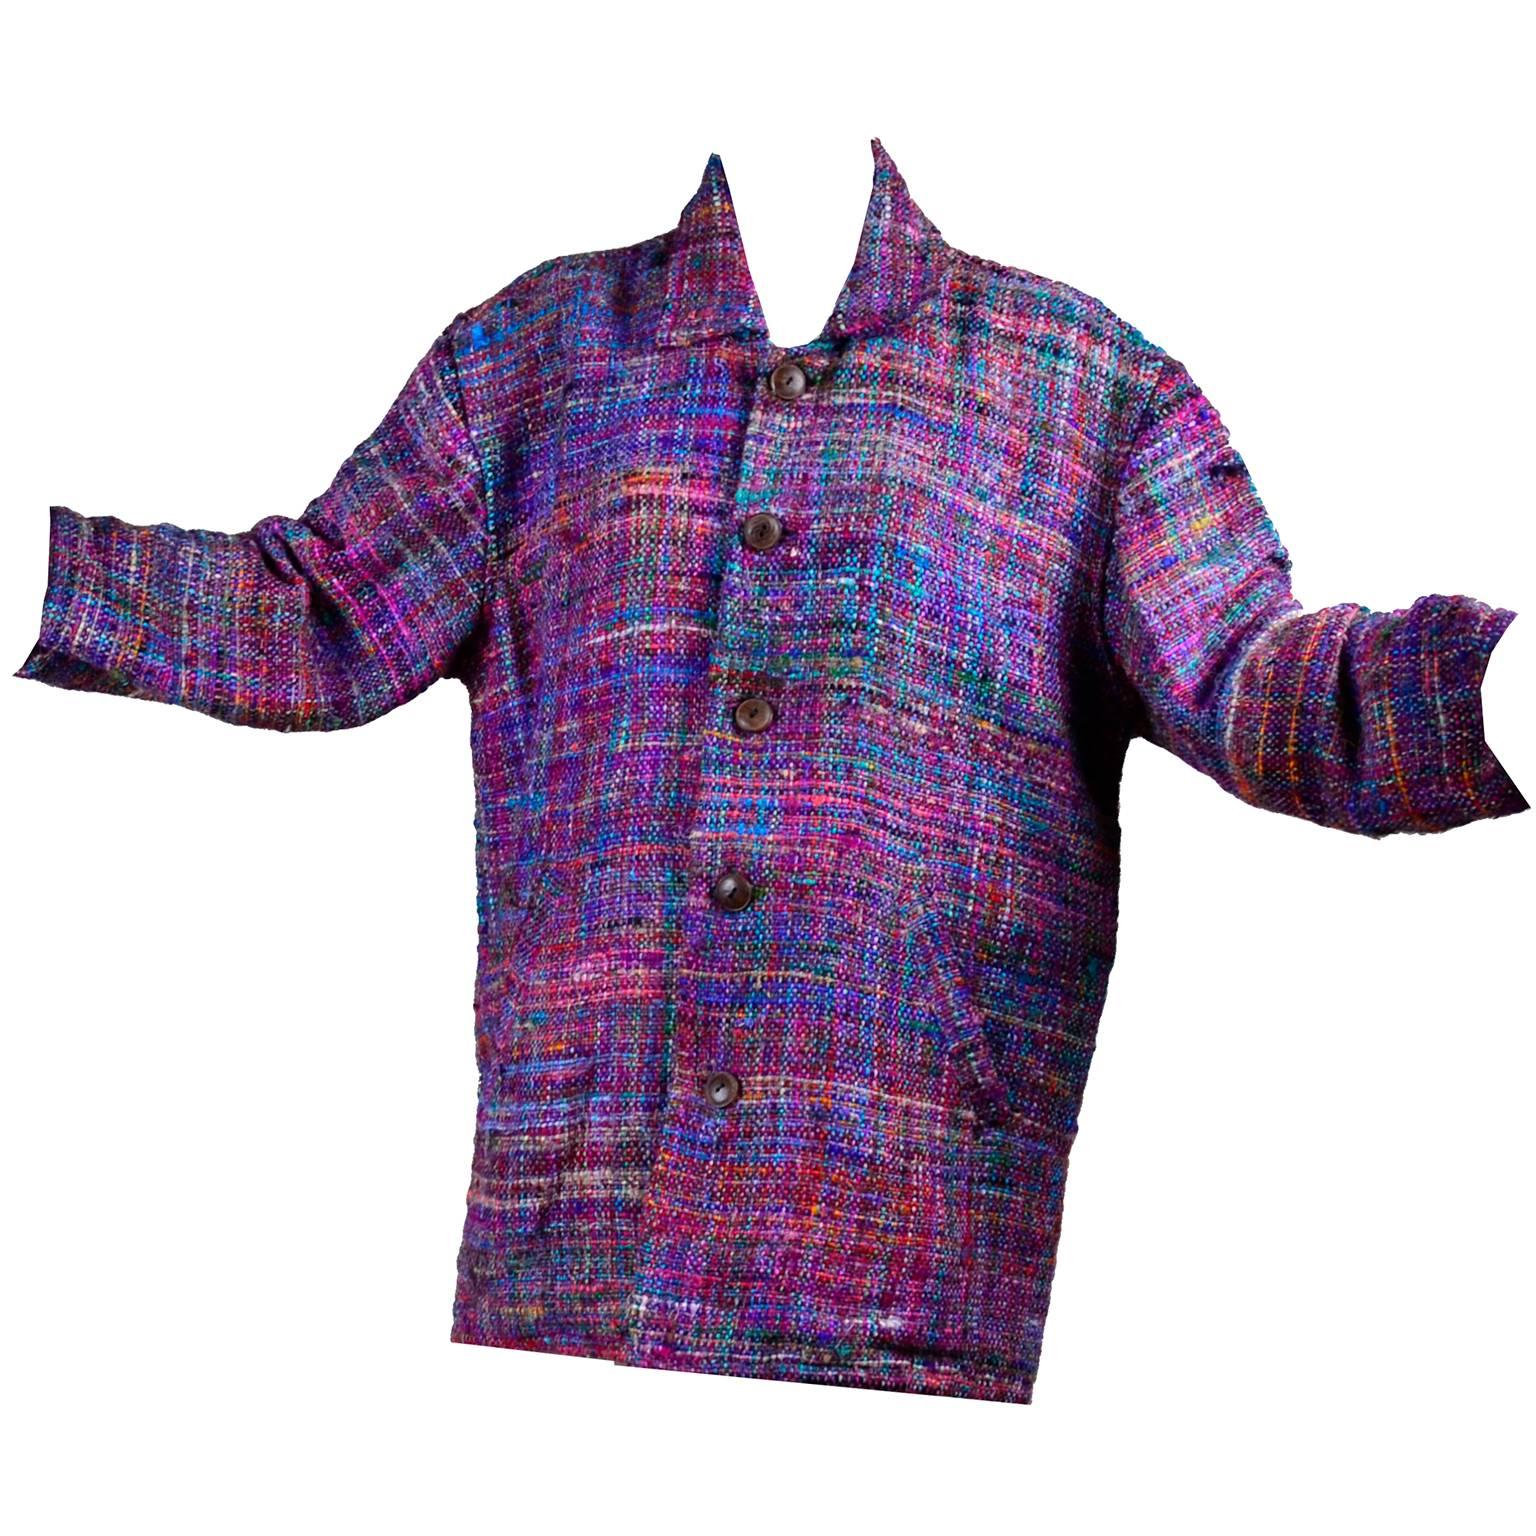 1980s Vintage Jacket in Multi Colored Silk Tweed 